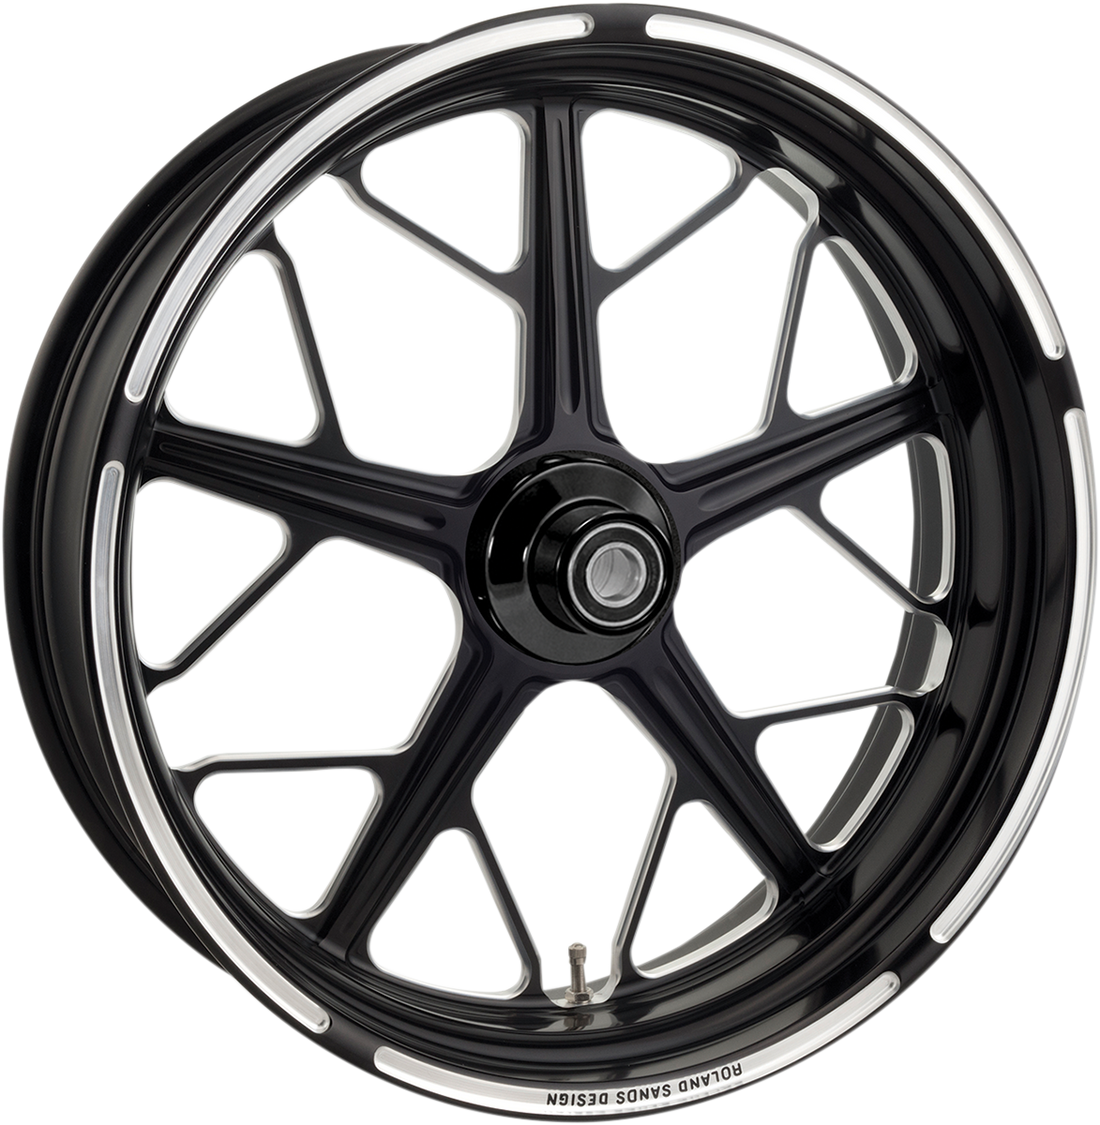 0202-2030 - RSD Hutch Wheel - Single Disc/ABS - Rear - Contrast Cut* - 18"x5.50" - '09+ FL 12697814RHUTBM